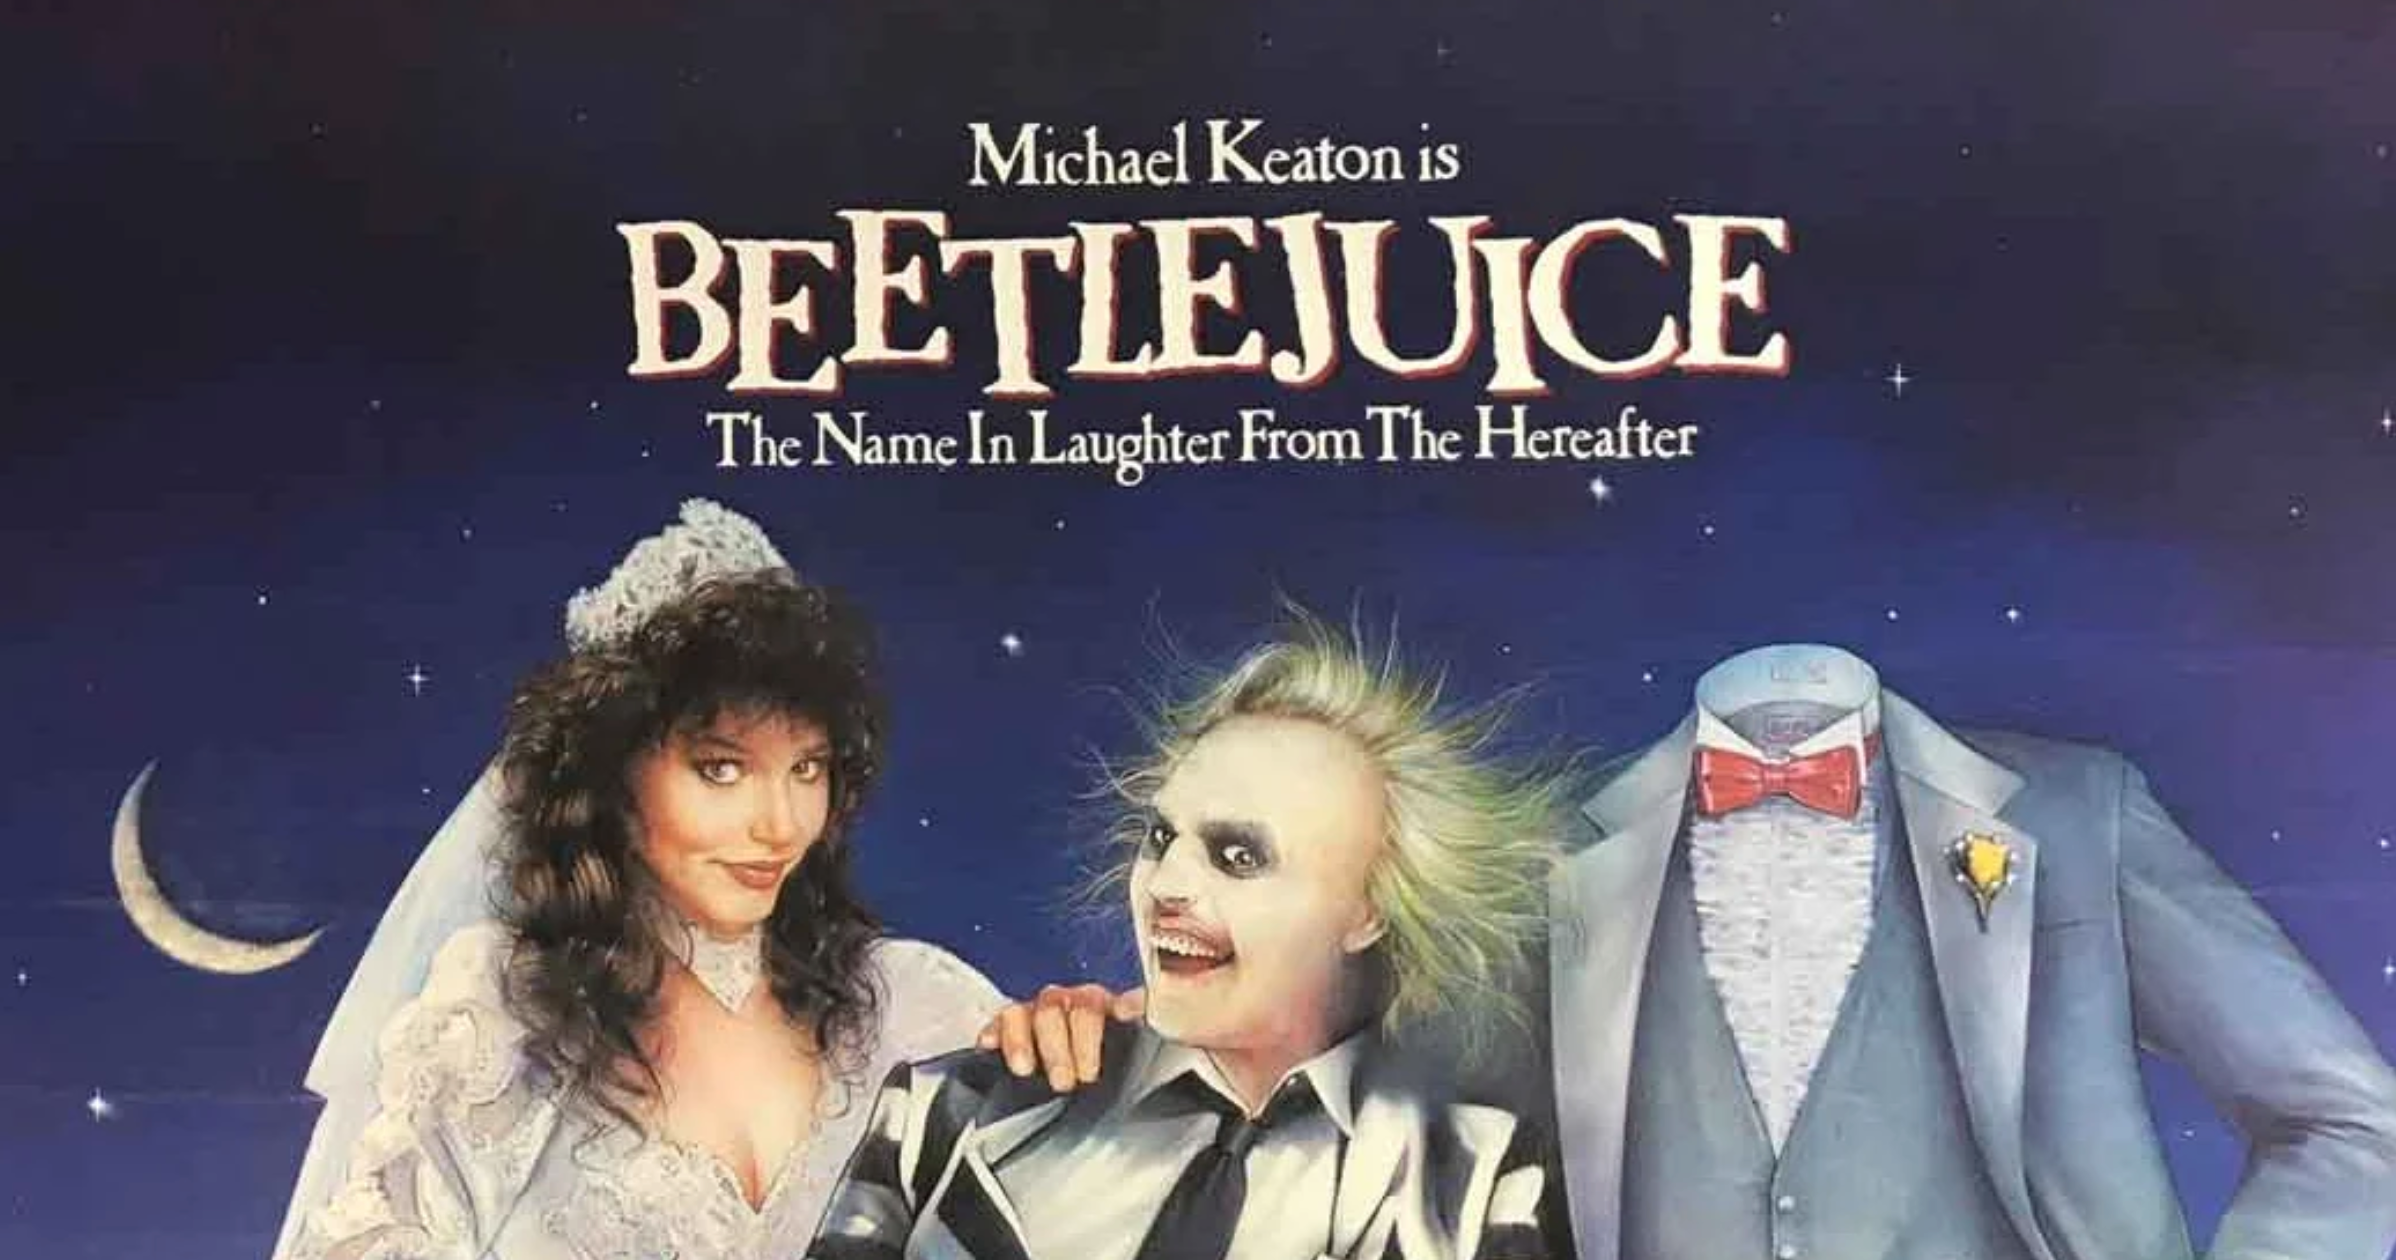 Beetlejuice movie poster